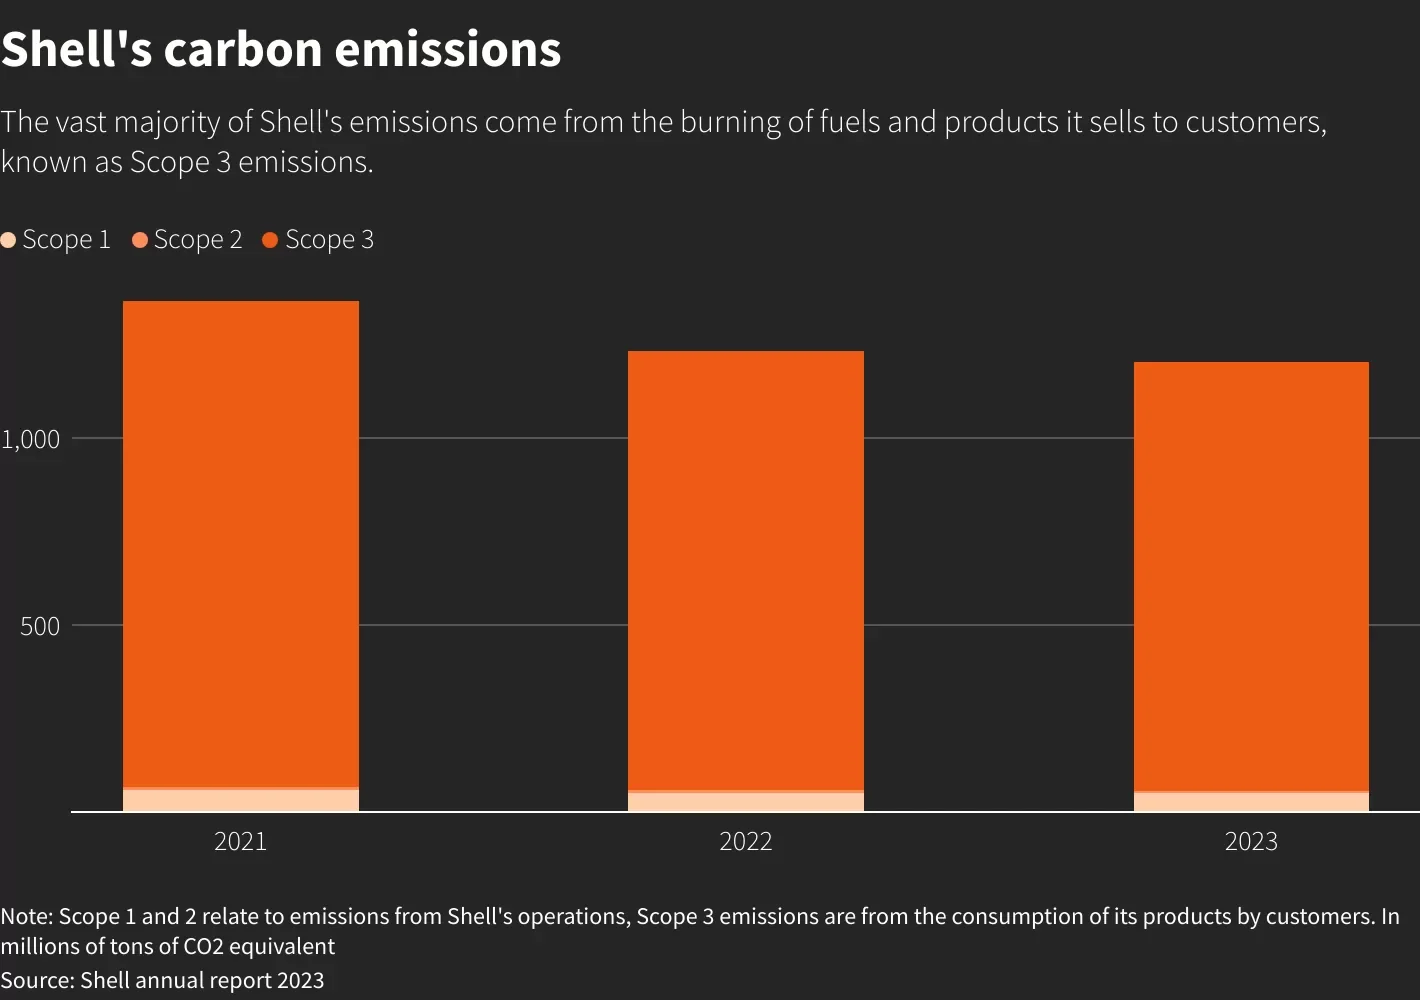 Le emissioni di carbonio della Shell